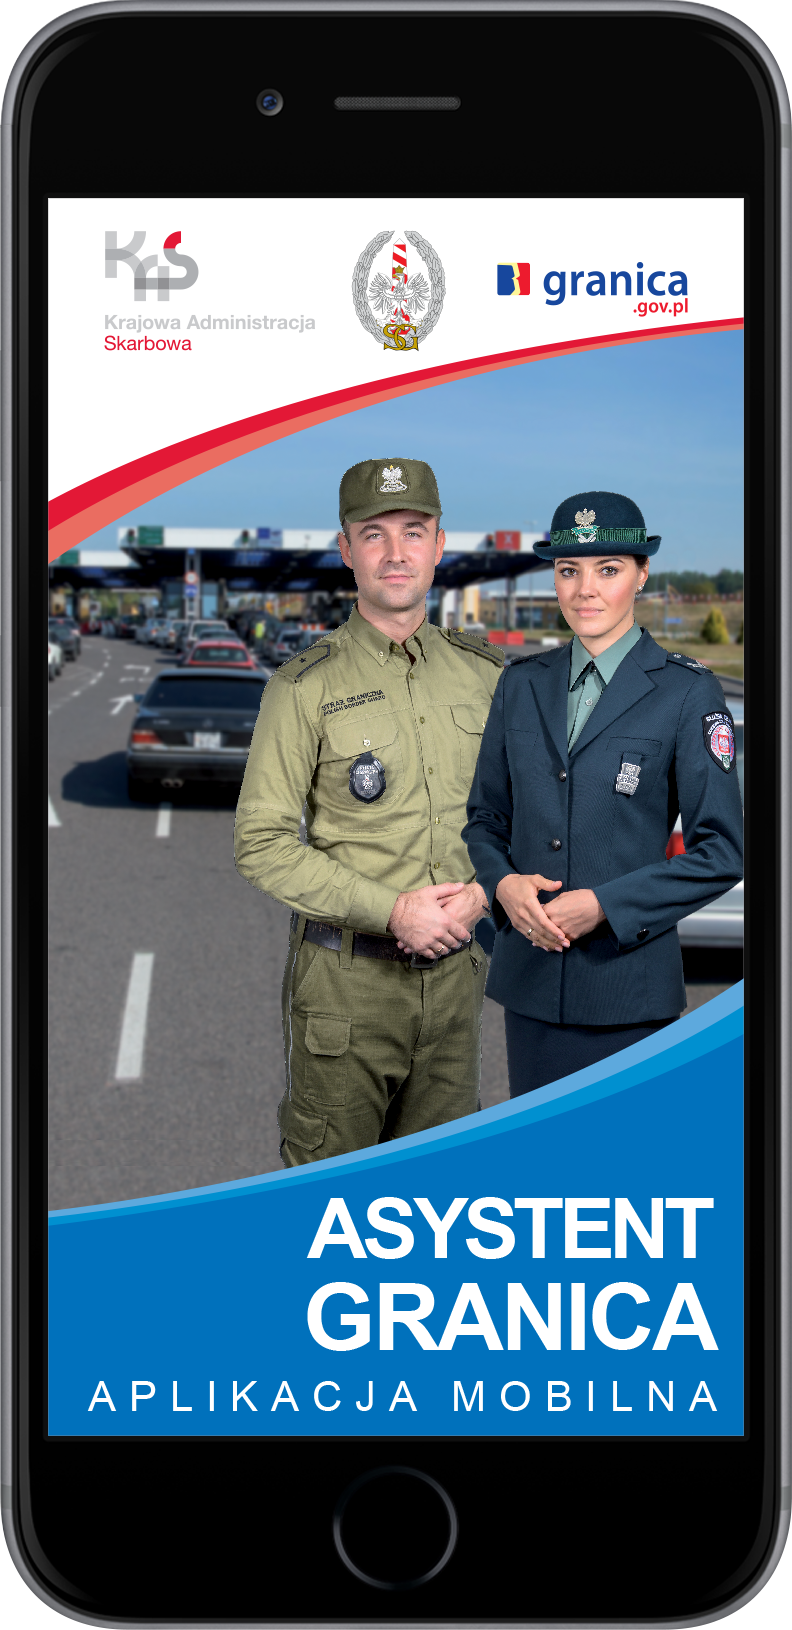 Zdjęcie promujące aplikację Asystent Granica, na którym znajdują się funkcjonariusze: Służby Celno-Skarbowej oraz Straży Granicznej na tle przejścia granicznego w kierunku wywozowym z Polski.